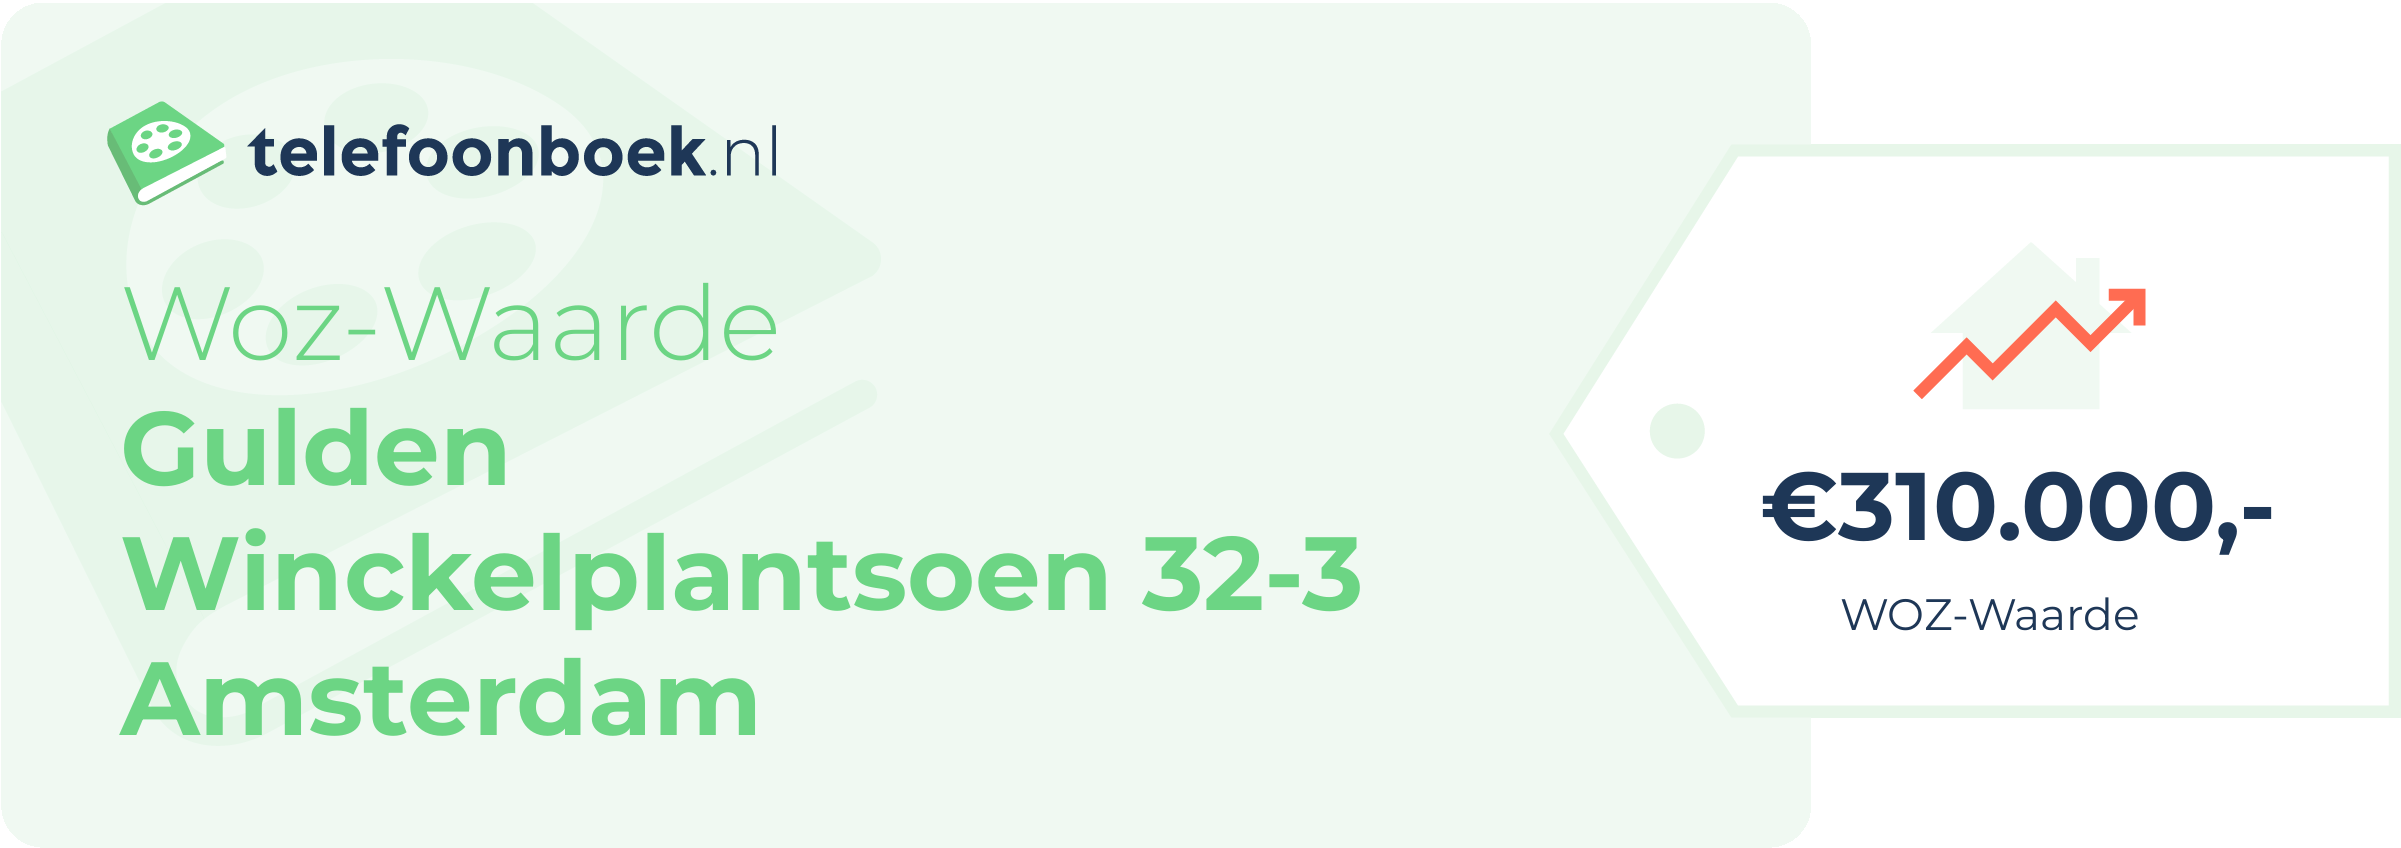 WOZ-waarde Gulden Winckelplantsoen 32-3 Amsterdam